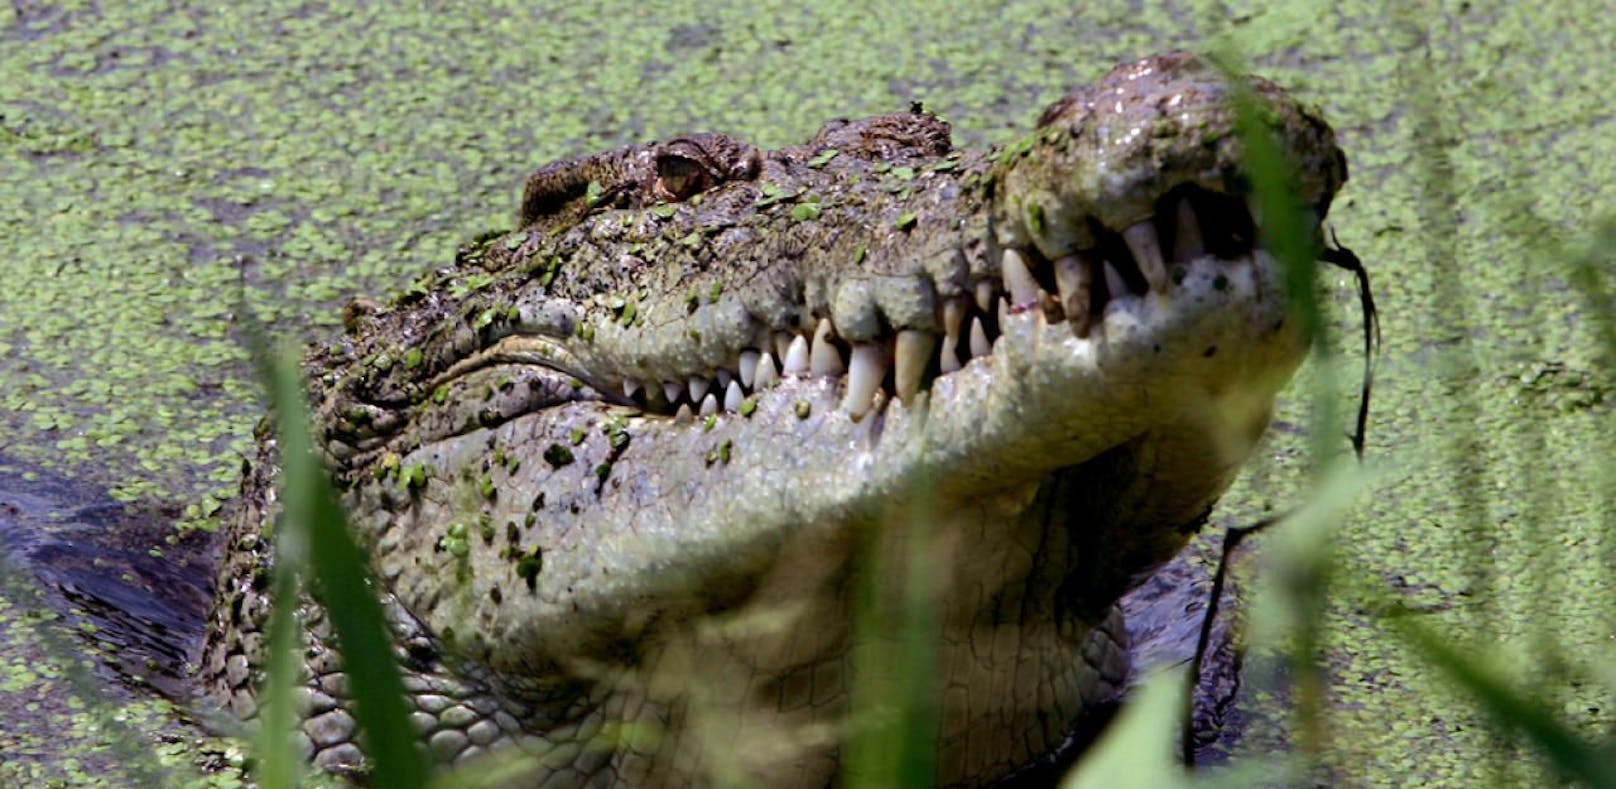 Die Frau wurde von einem Krokodil zerfleischt